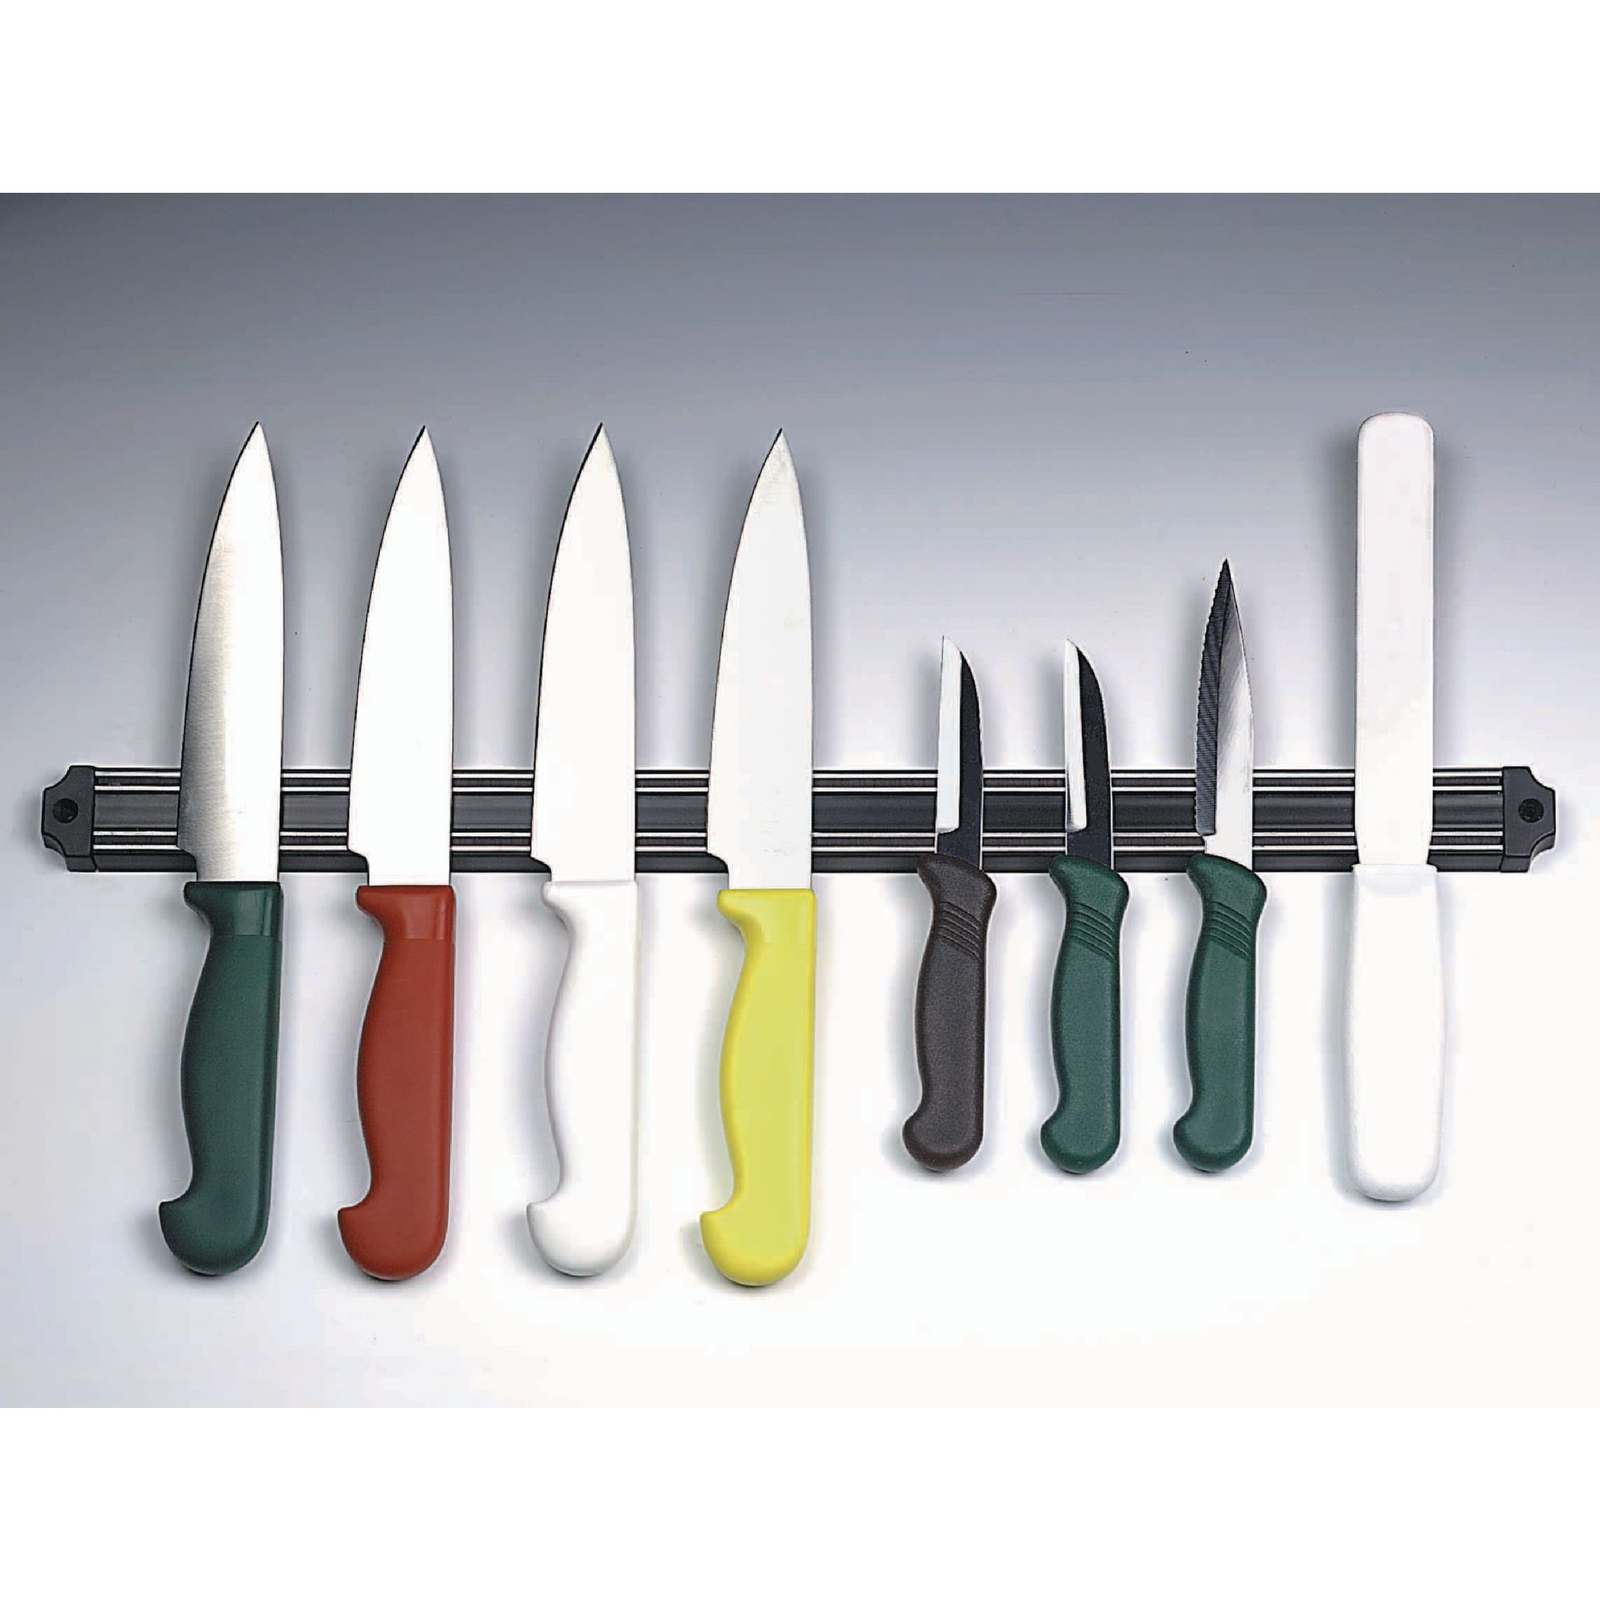 Paring Knives - Green handle